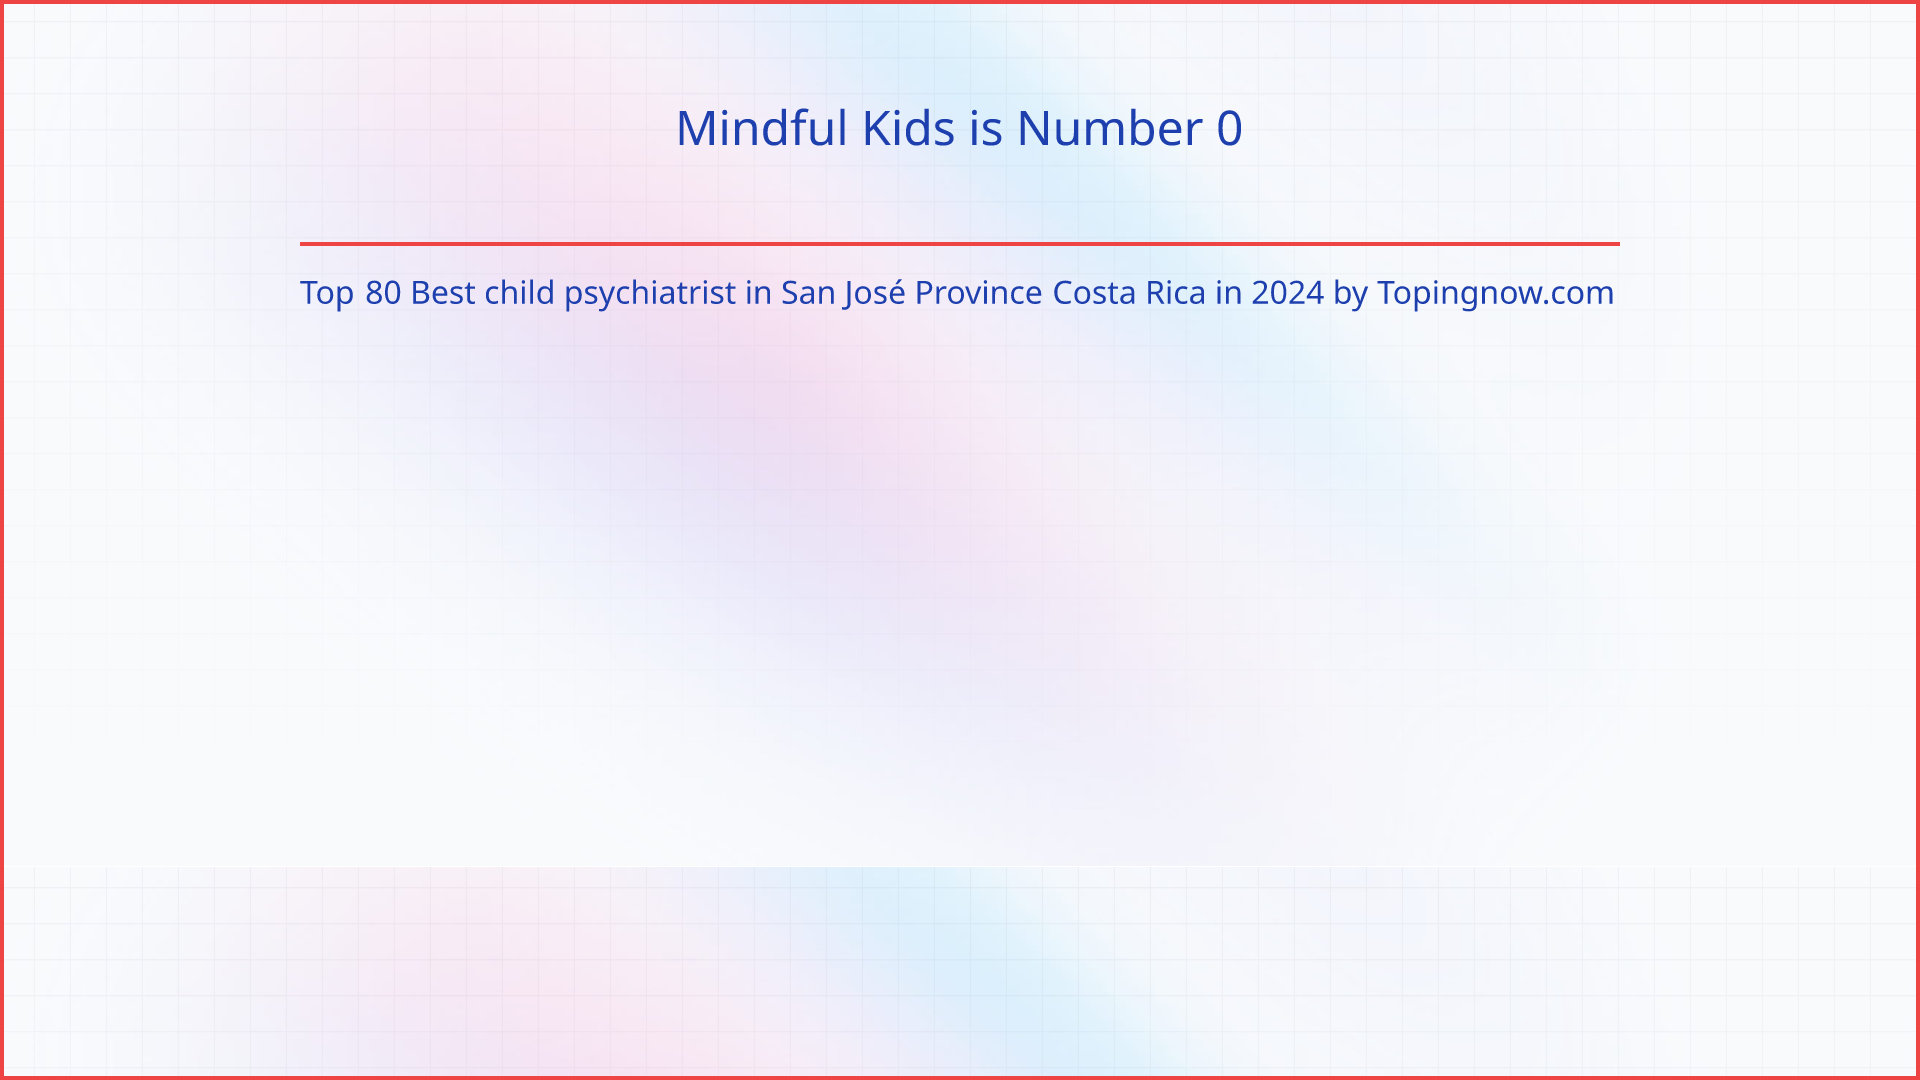 Mindful Kids: Top 80 Best child psychiatrist in San José Province Costa Rica in 2024